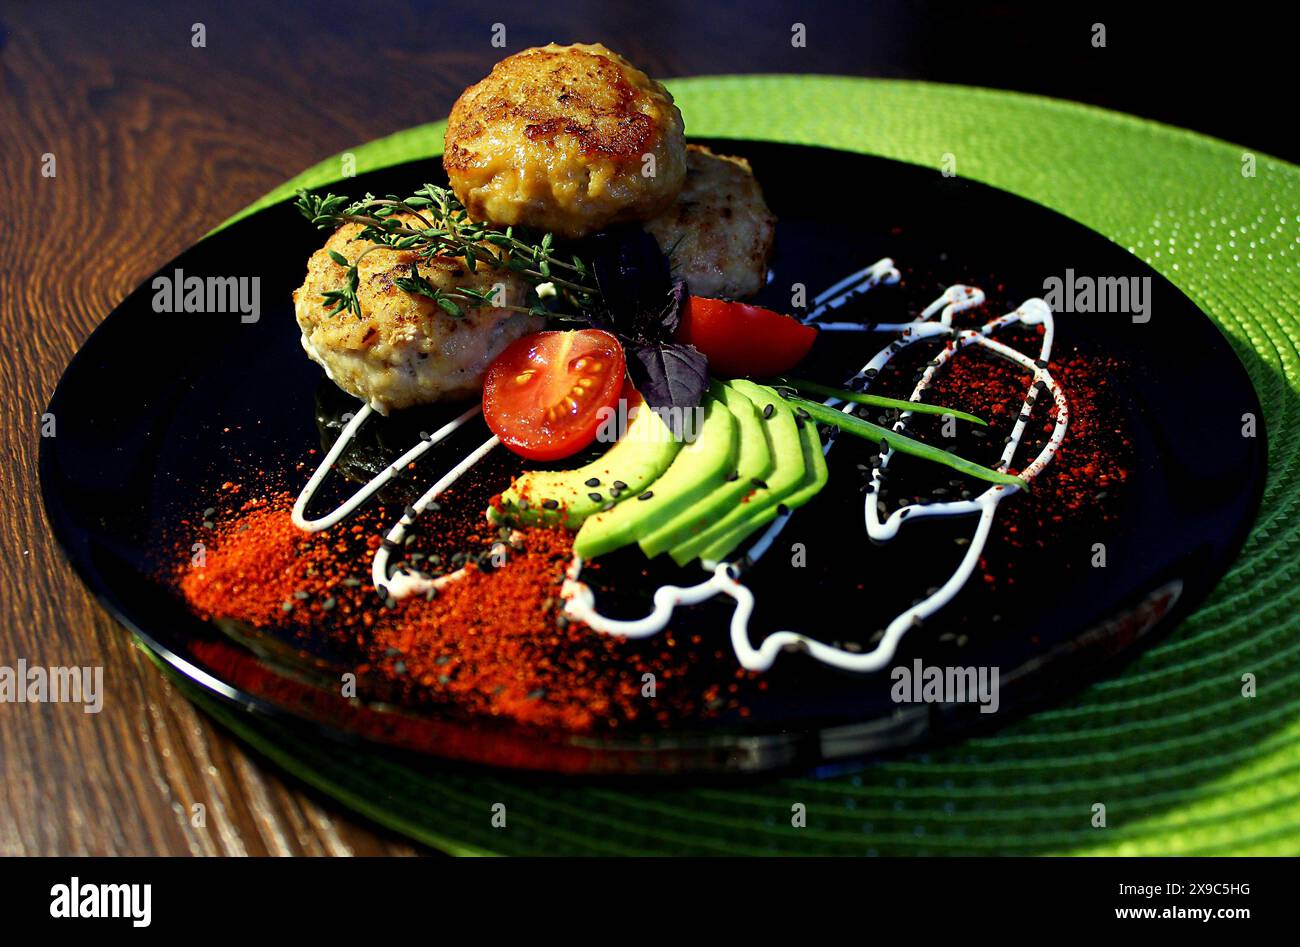 Plat gastronomique avec galettes de viande, avocat, tomate cerise et herbes confectionné sur une assiette noire avec présentation artistique Banque D'Images